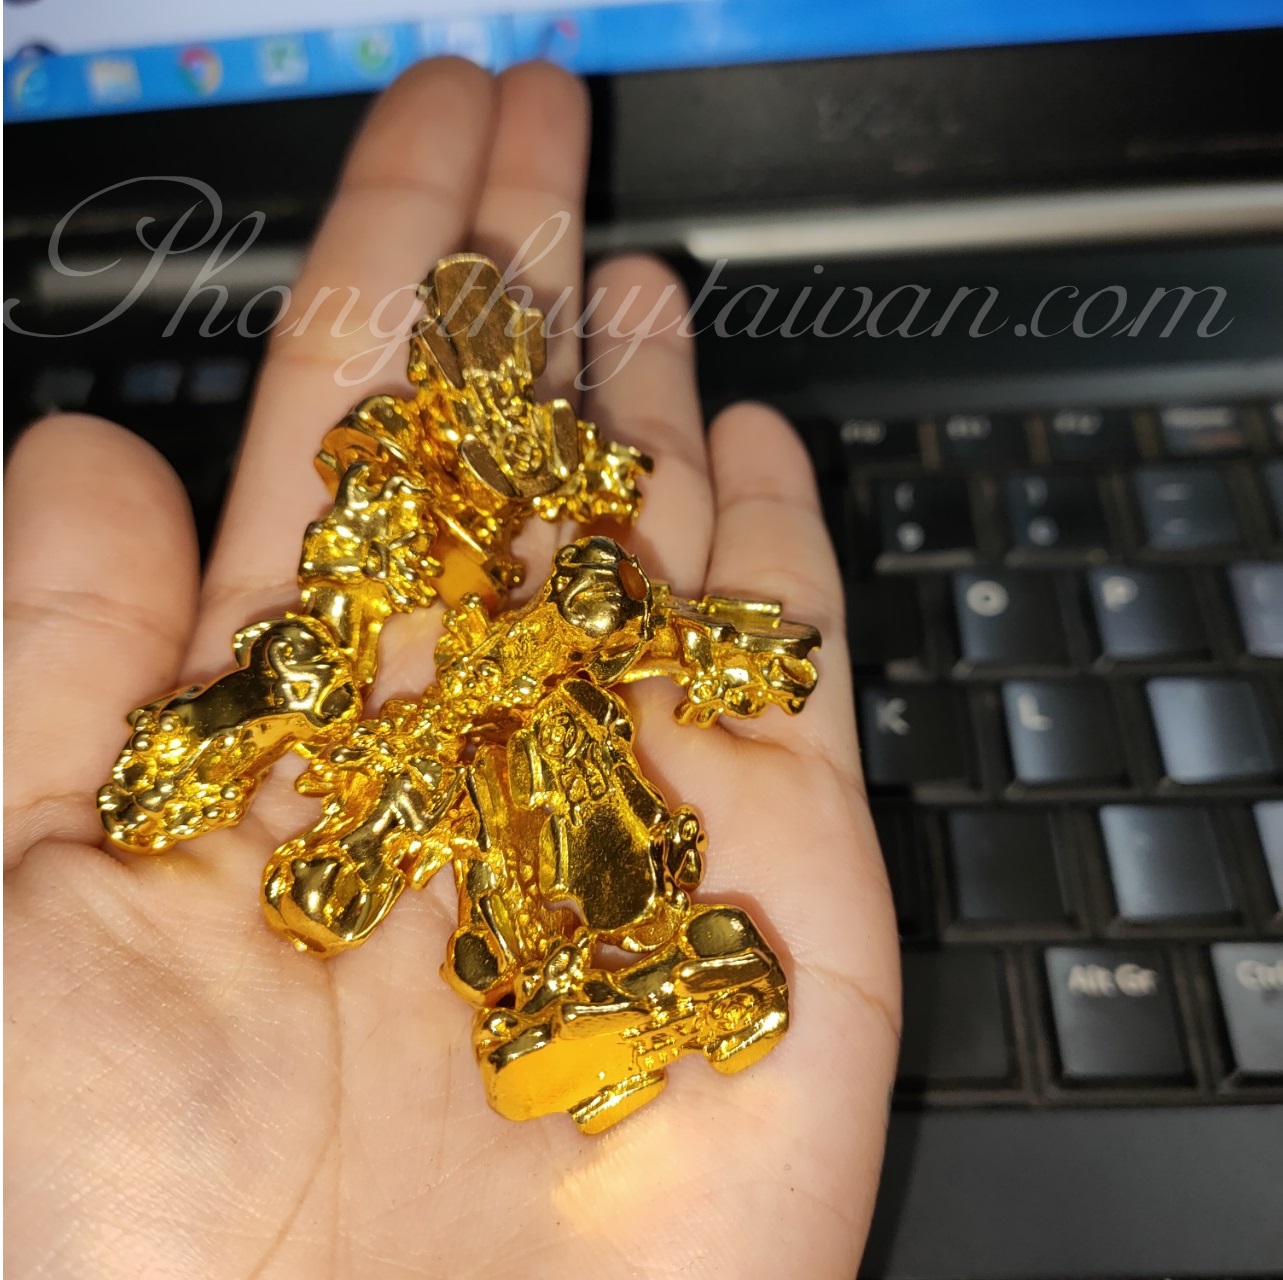 Tùy hưu nhỏ mạ vàng 2cm (mix vòng tay, dây đeo ....) - Linh vật phong thủy